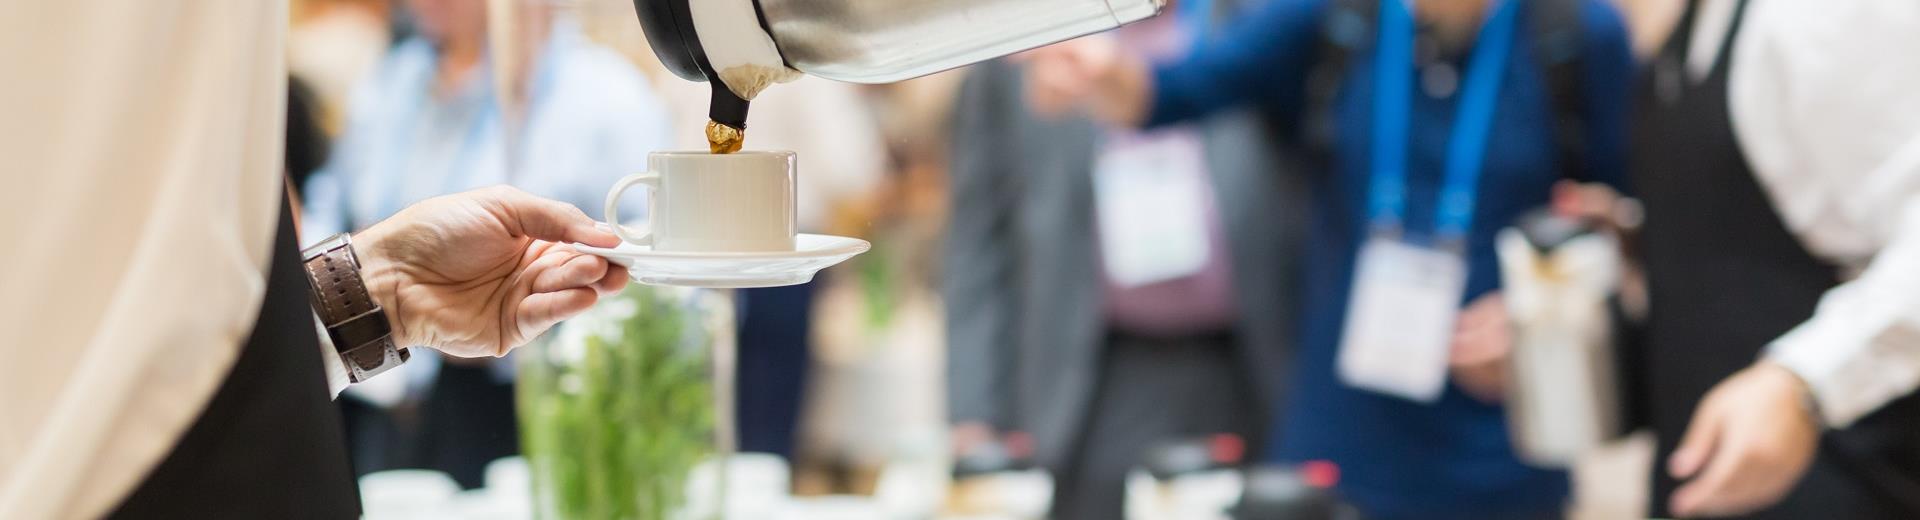 Organizza il tuo meeting all''Hotel Corsi e chiedici il nostro servizio di coffee break, per un evento di successo.